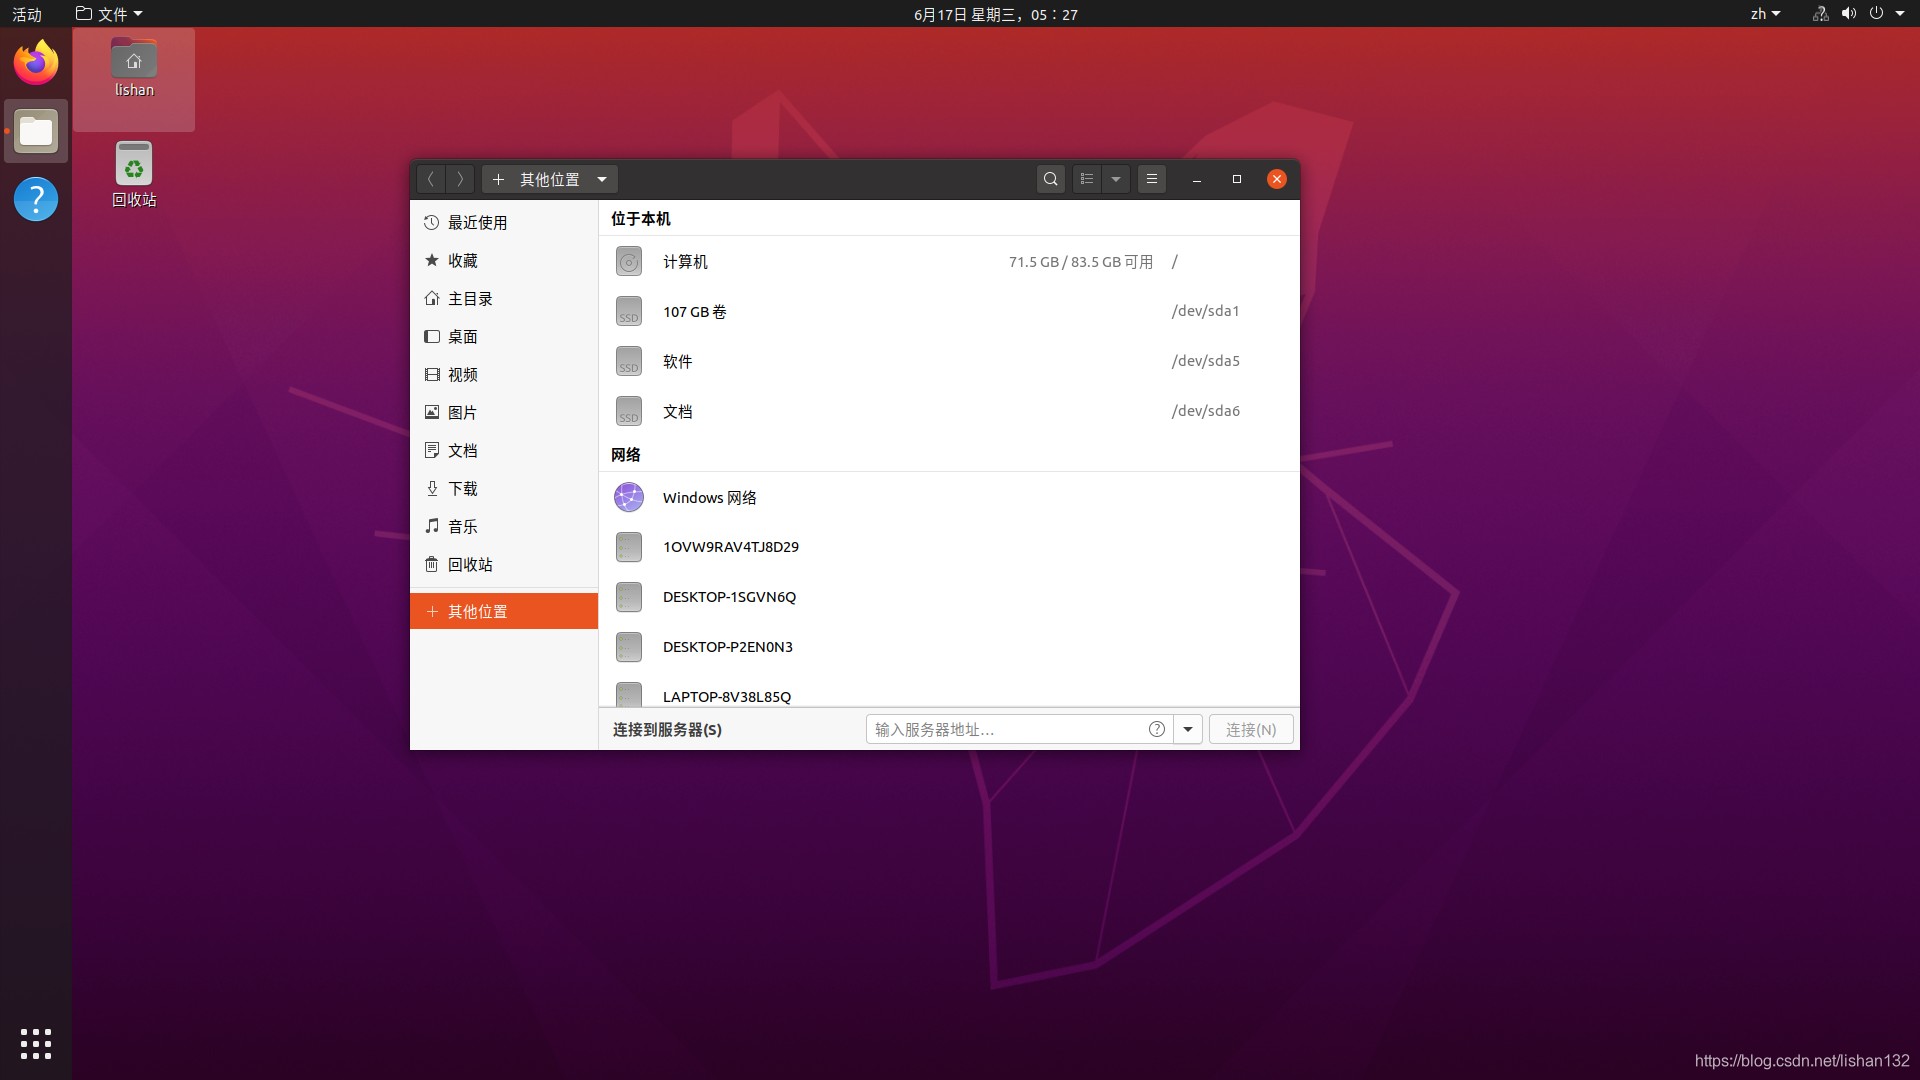 安卓与Ubuntu双系统：安装步骤、优势劣势对比与运用经验分享  第5张